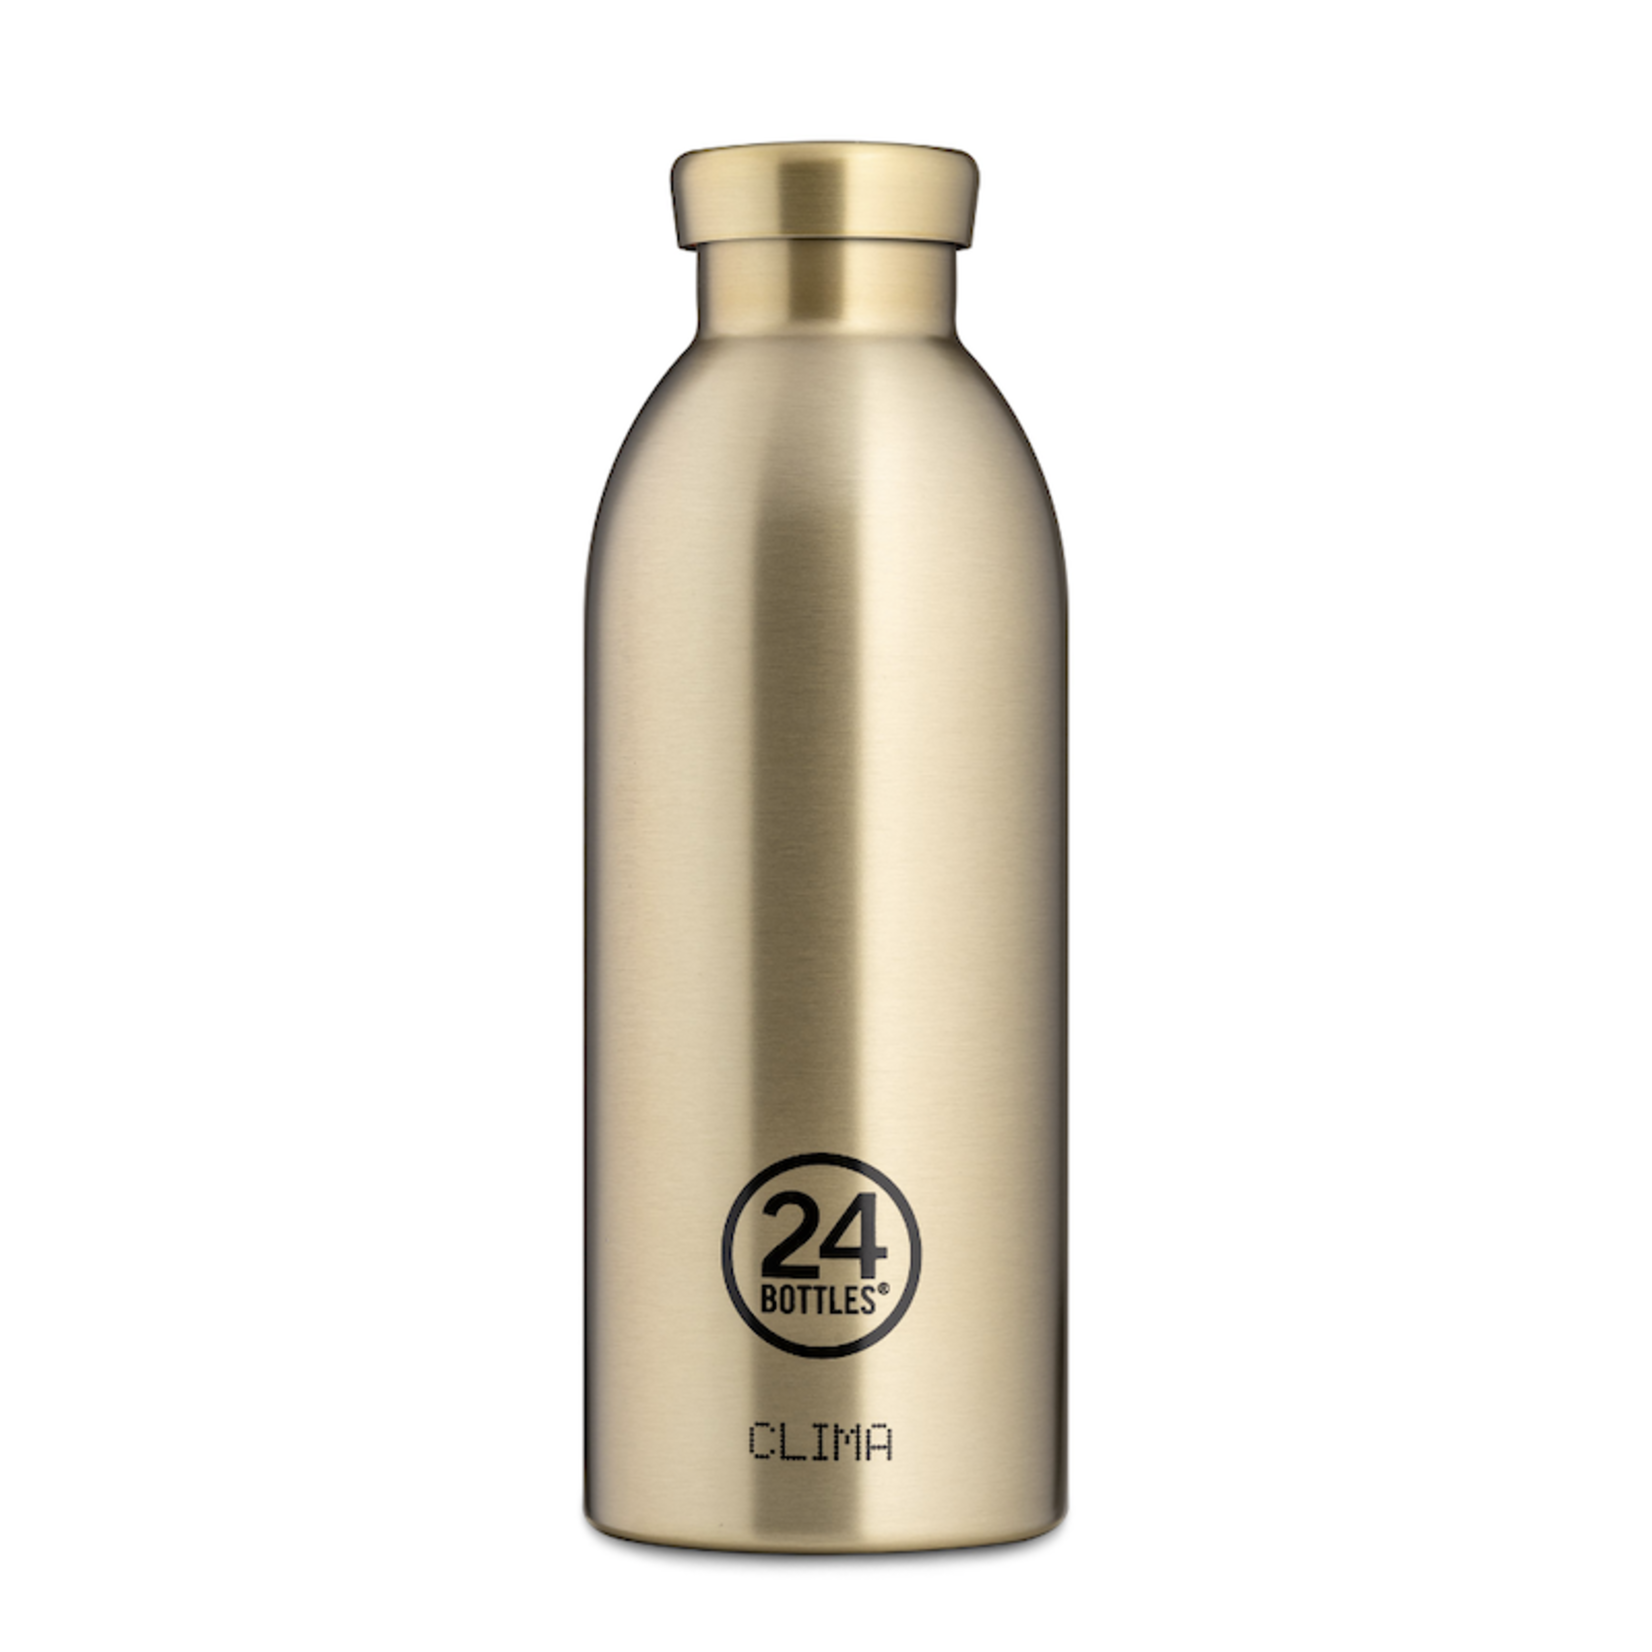 24 bottles 24 bottles - Clima bottle - sparkling gold